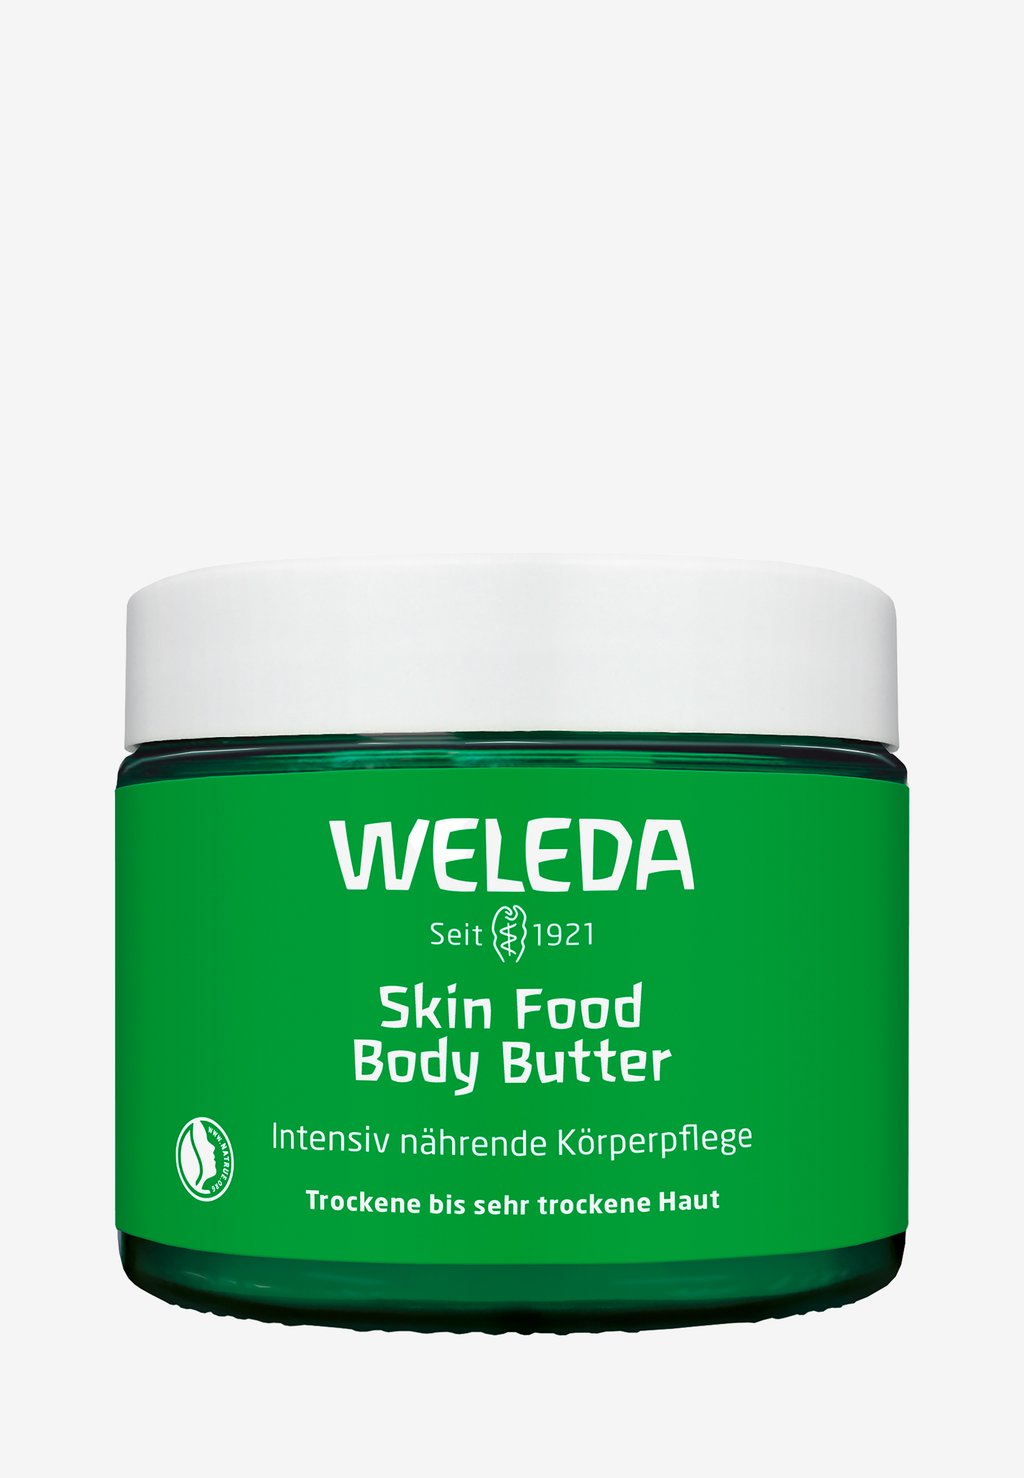 Увлажняющее масло для тела Skin Food Body Butter Weleda weleda крем для тела skin food body butter 150 мл